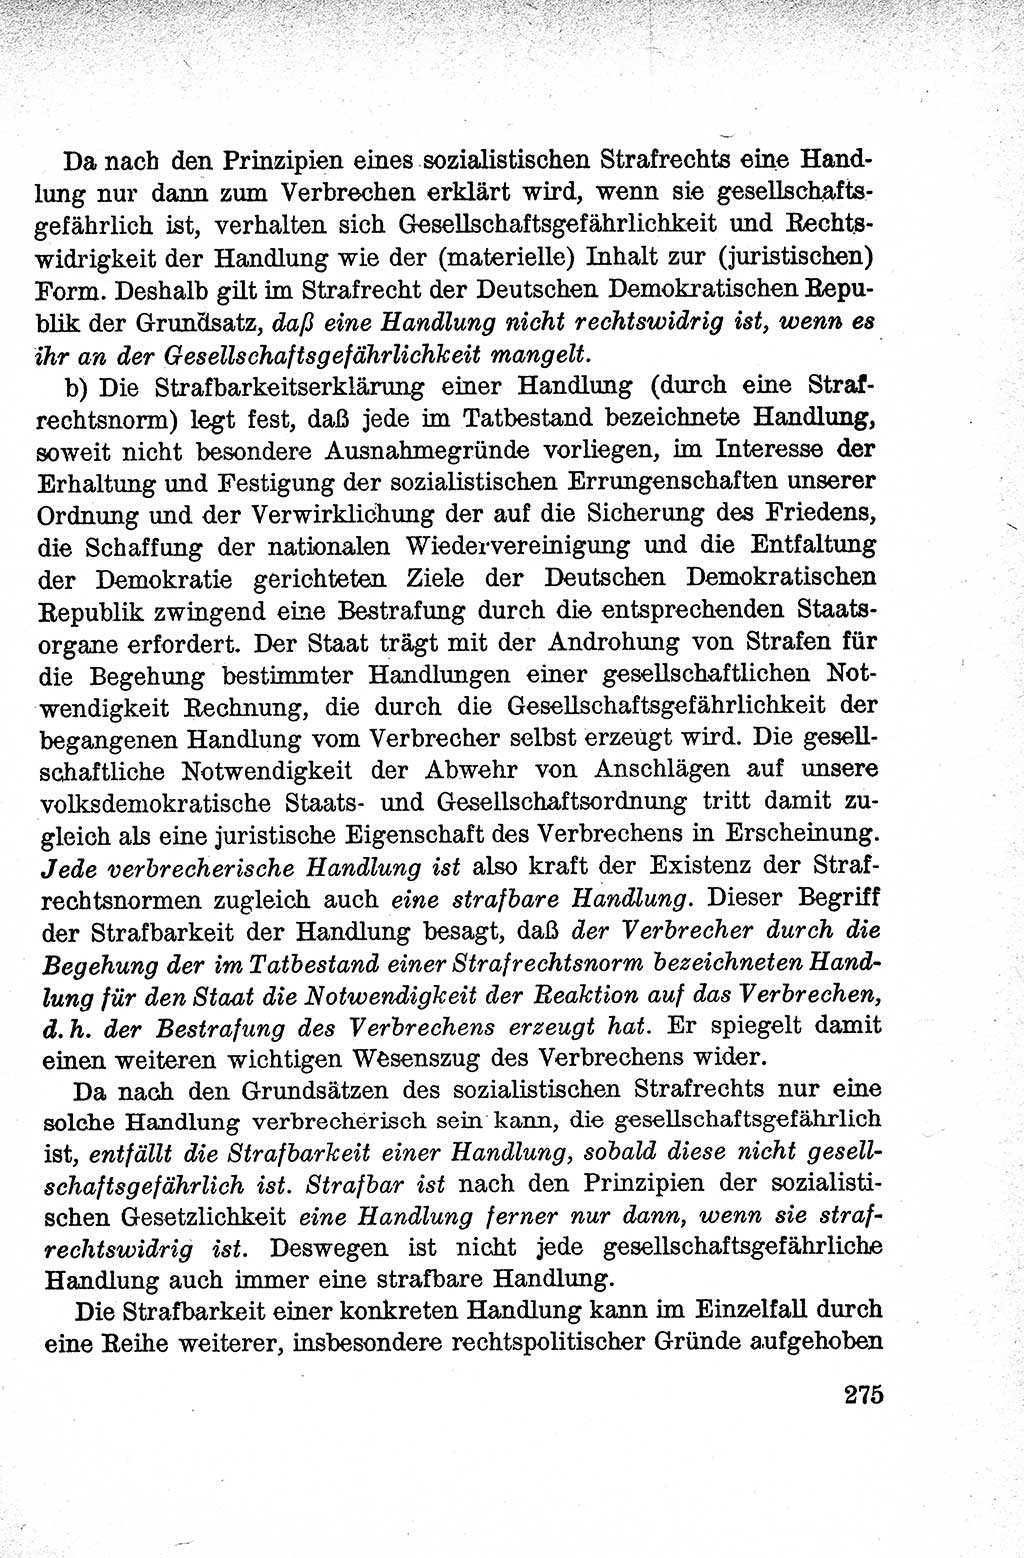 Lehrbuch des Strafrechts der Deutschen Demokratischen Republik (DDR), Allgemeiner Teil 1959, Seite 275 (Lb. Strafr. DDR AT 1959, S. 275)